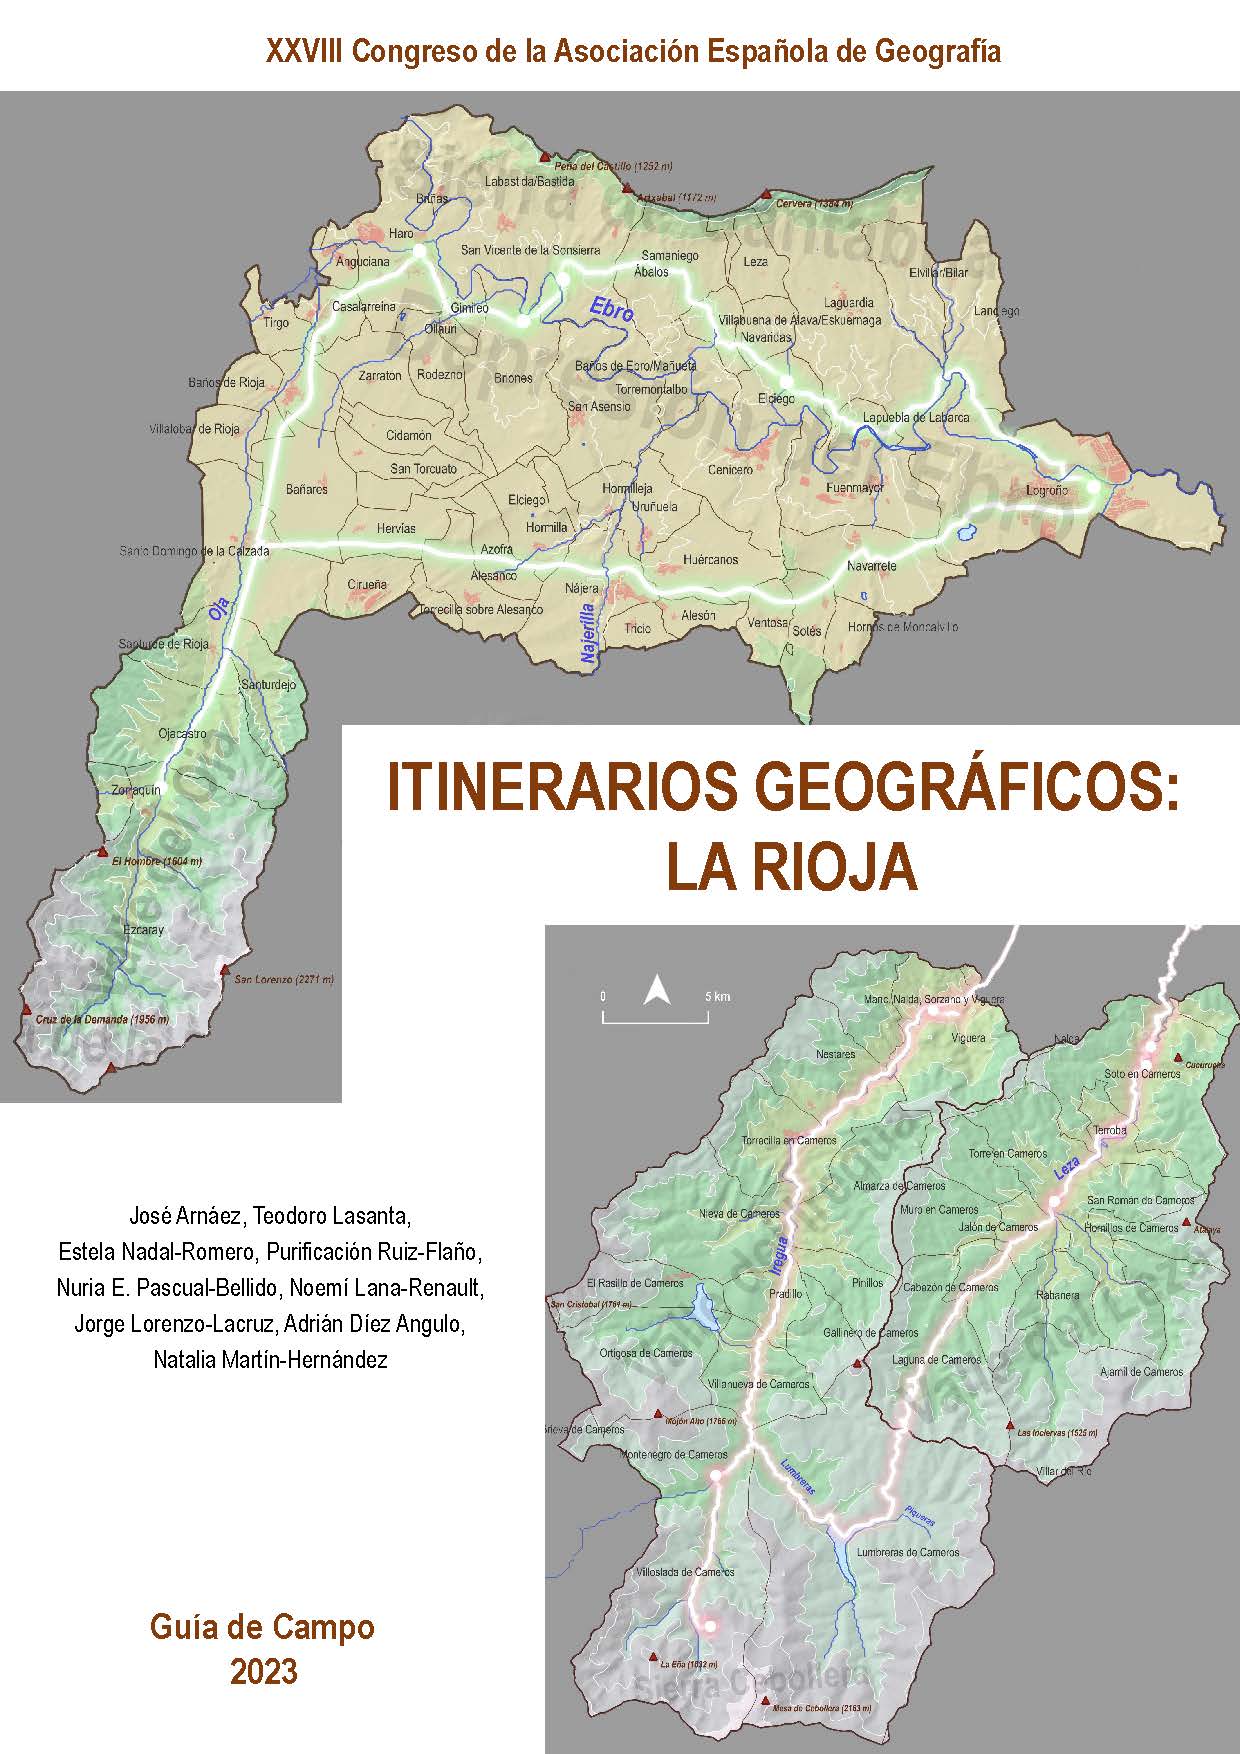 Imagen de portada del libro Itinerarios geográficos: La Rioja